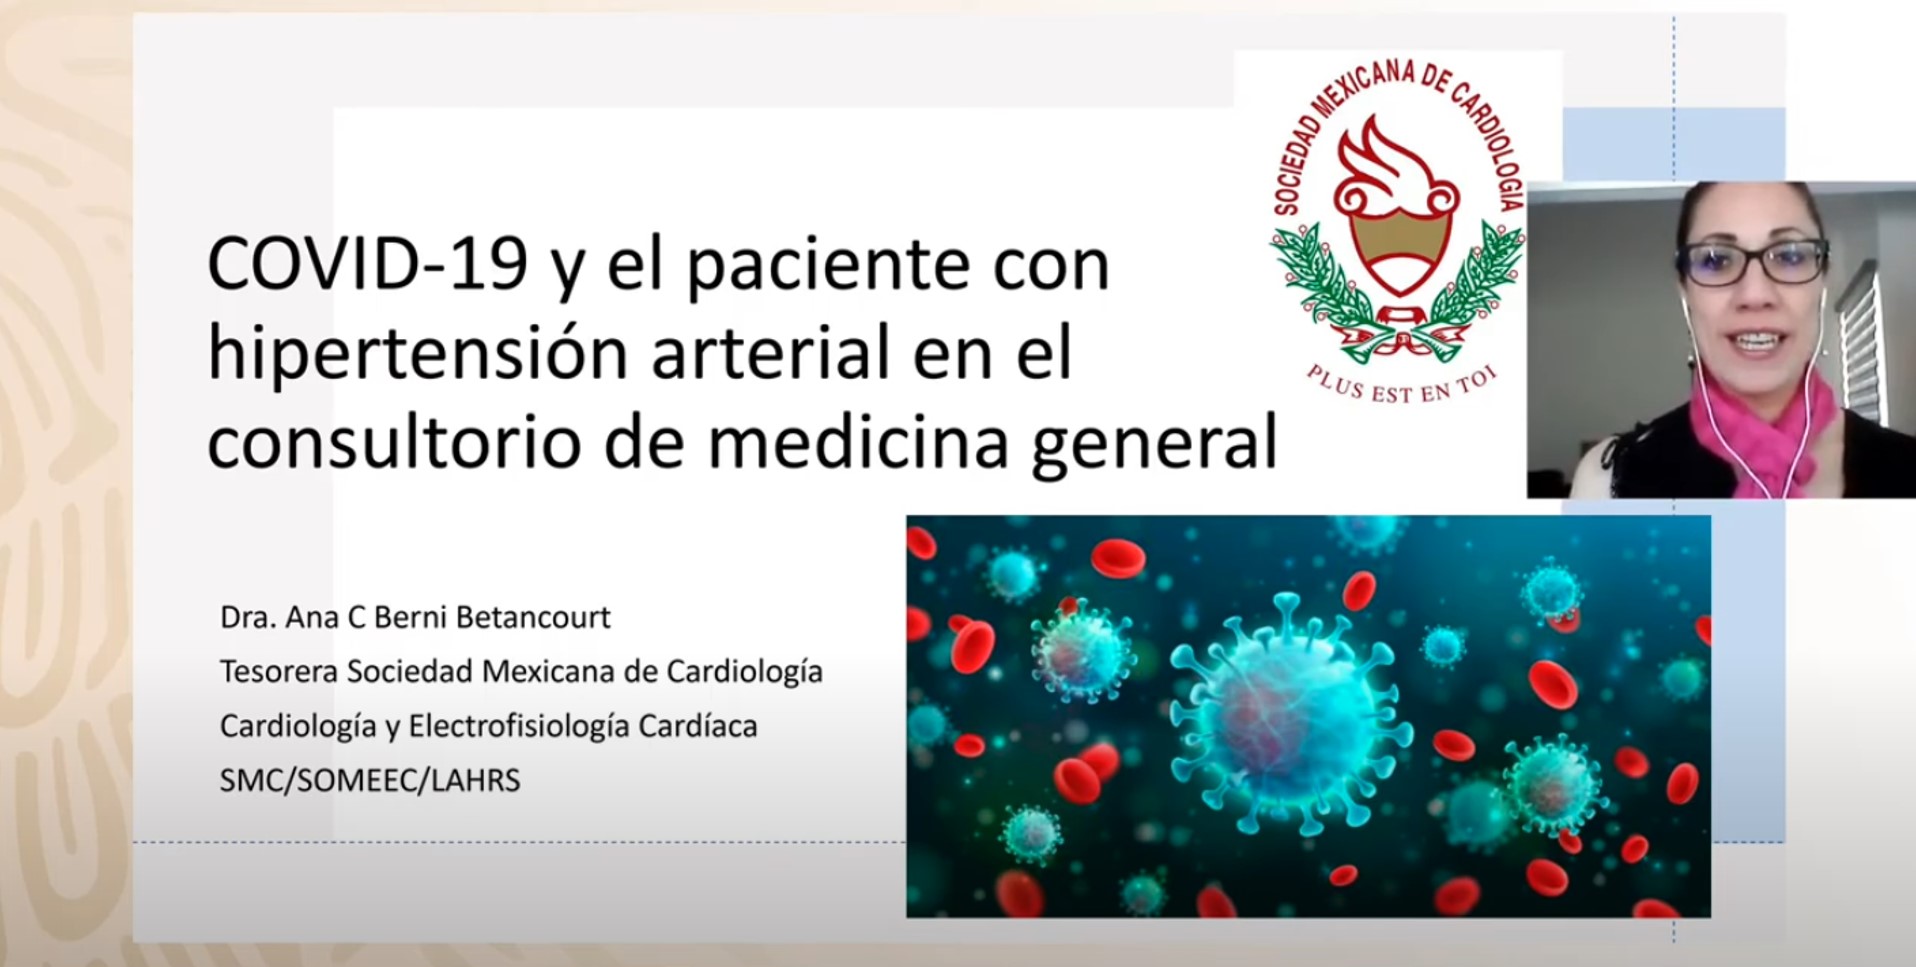 Tema: COVID-19 y el paciente con hipertensión arterial en el consultorio de medicina general